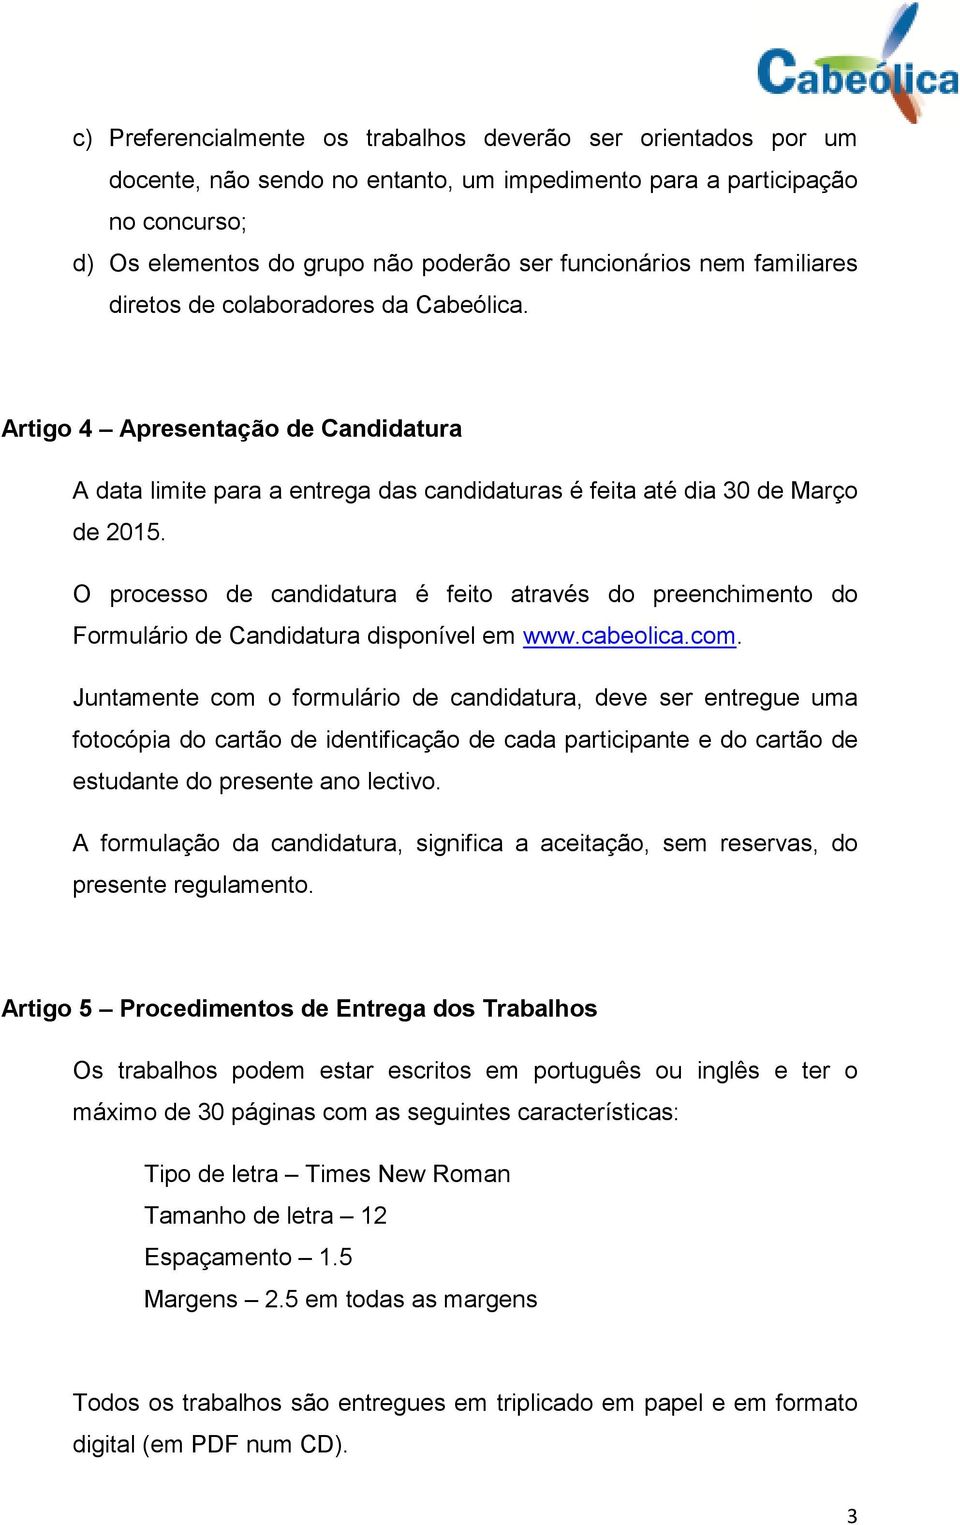 O processo de candidatura é feito através do preenchimento do Formulário de Candidatura disponível em www.cabeolica.com.